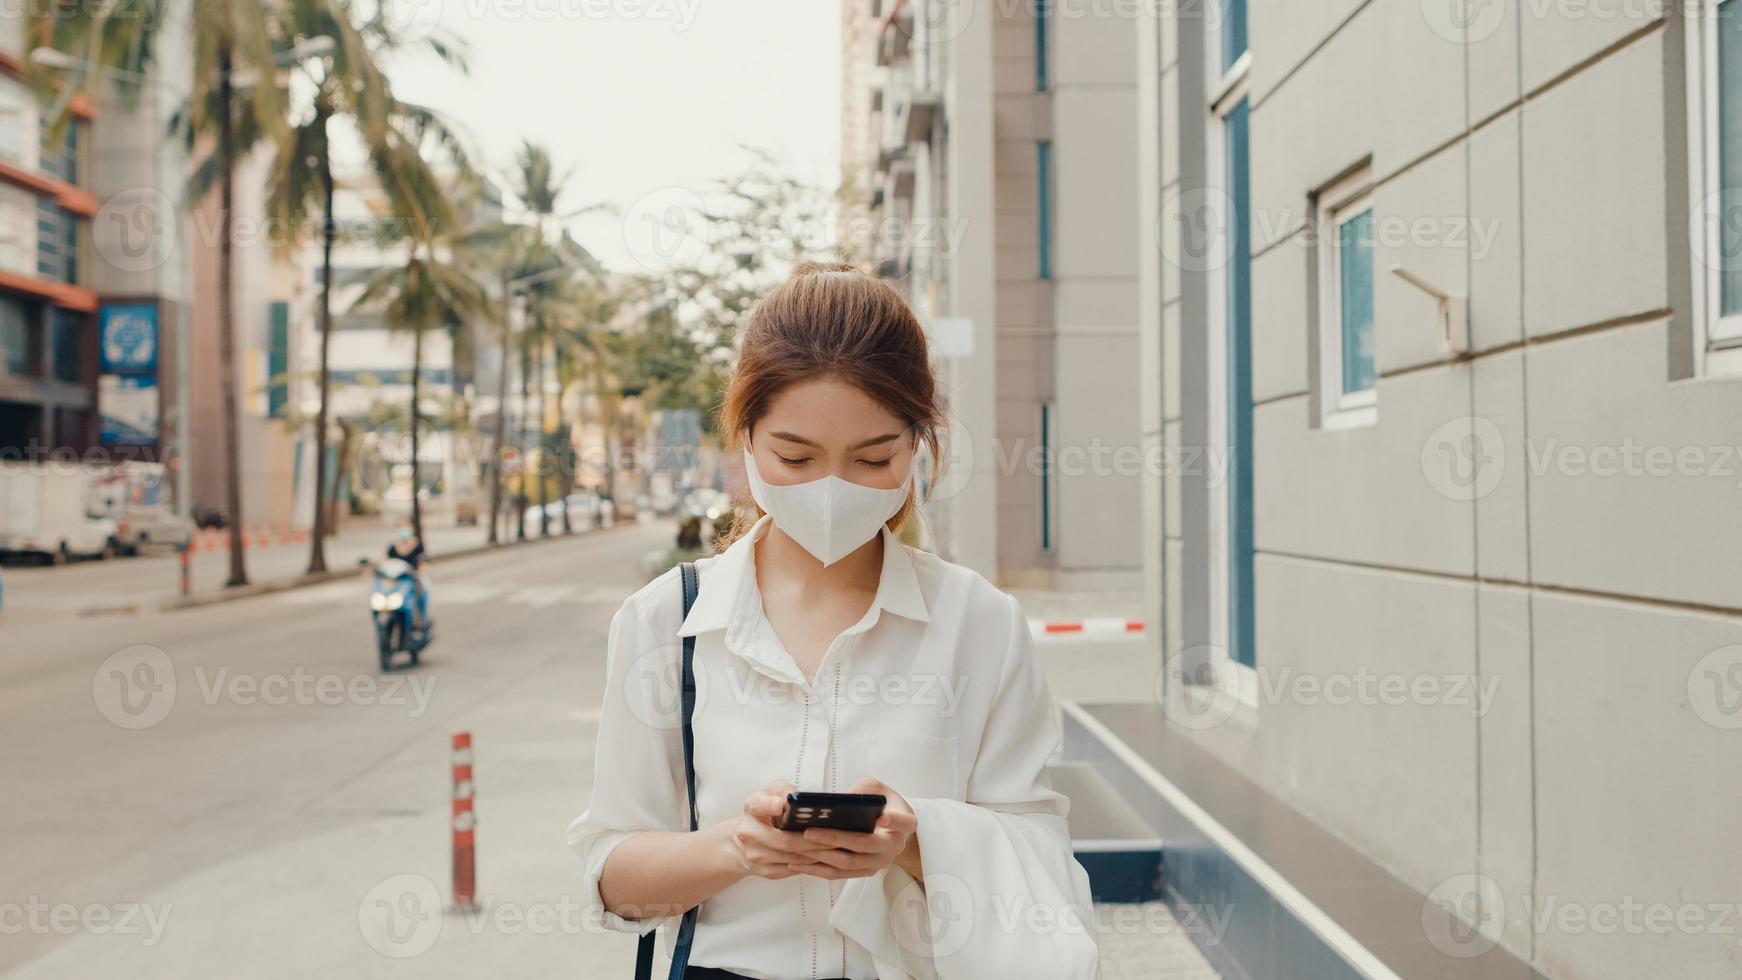 Erfolgreiche junge asiatische Geschäftsfrau in modischer Bürokleidung mit medizinischer Gesichtsmaske mit Smartphone, während sie morgens allein im Freien in der urbanen modernen Stadt spaziert. Business-on-Go-Konzept. foto